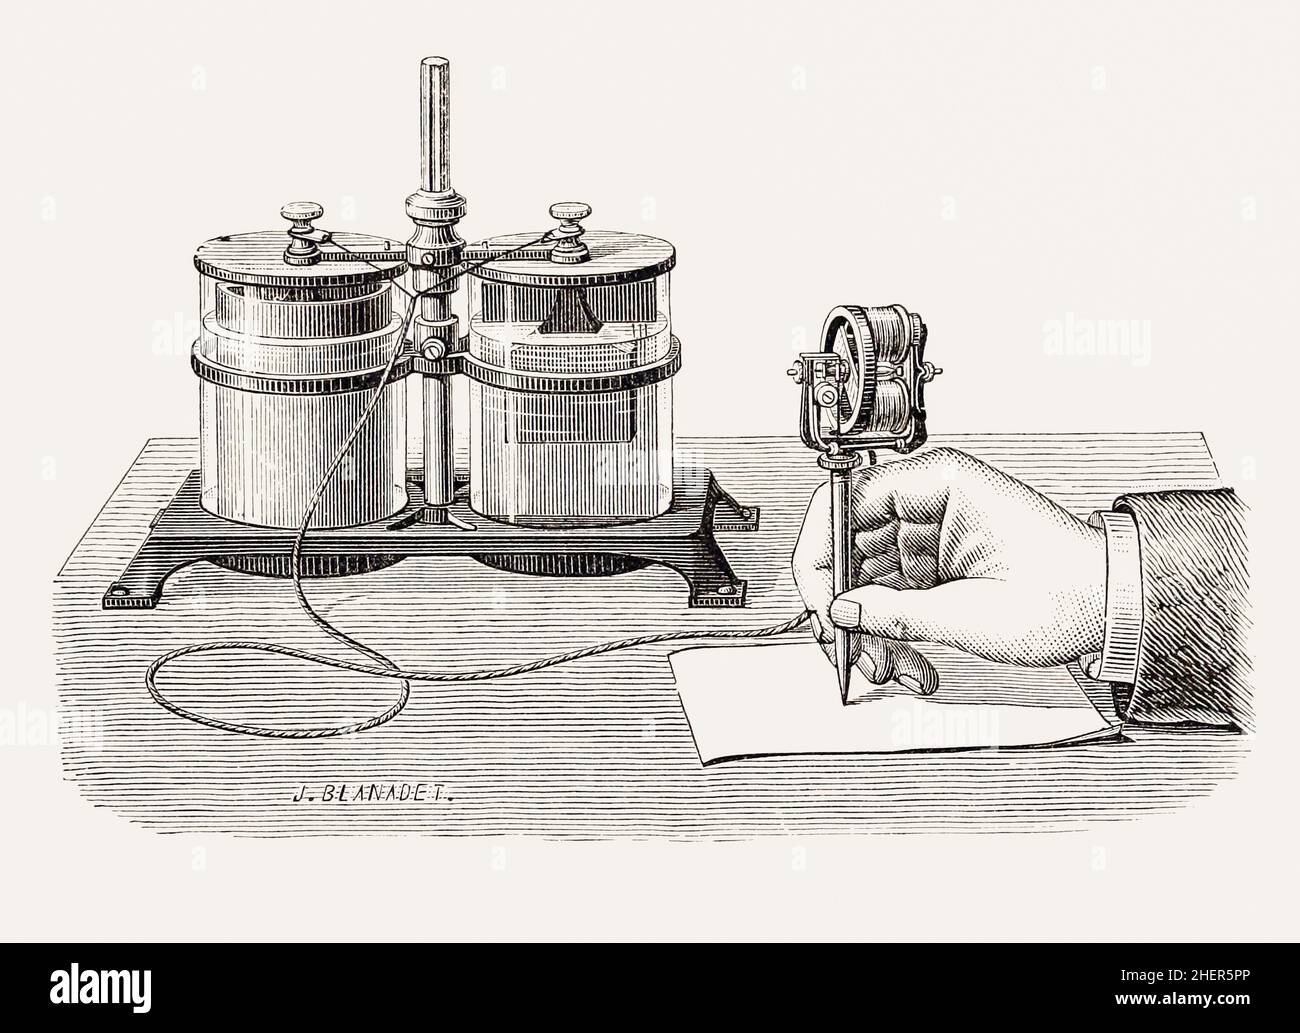 Der elektrische Stift von Thomas Edison mit seiner Nasszelle. Der Stift wurde entwickelt, um Dokumente zu duplizieren und ging Ende 1875 in den Verkauf, aber wegen der hohen Wartungsbatterie war seine kommerzielle Lebensdauer kurz und es wurde bald durch effizientere Technologien ersetzt. Stockfoto